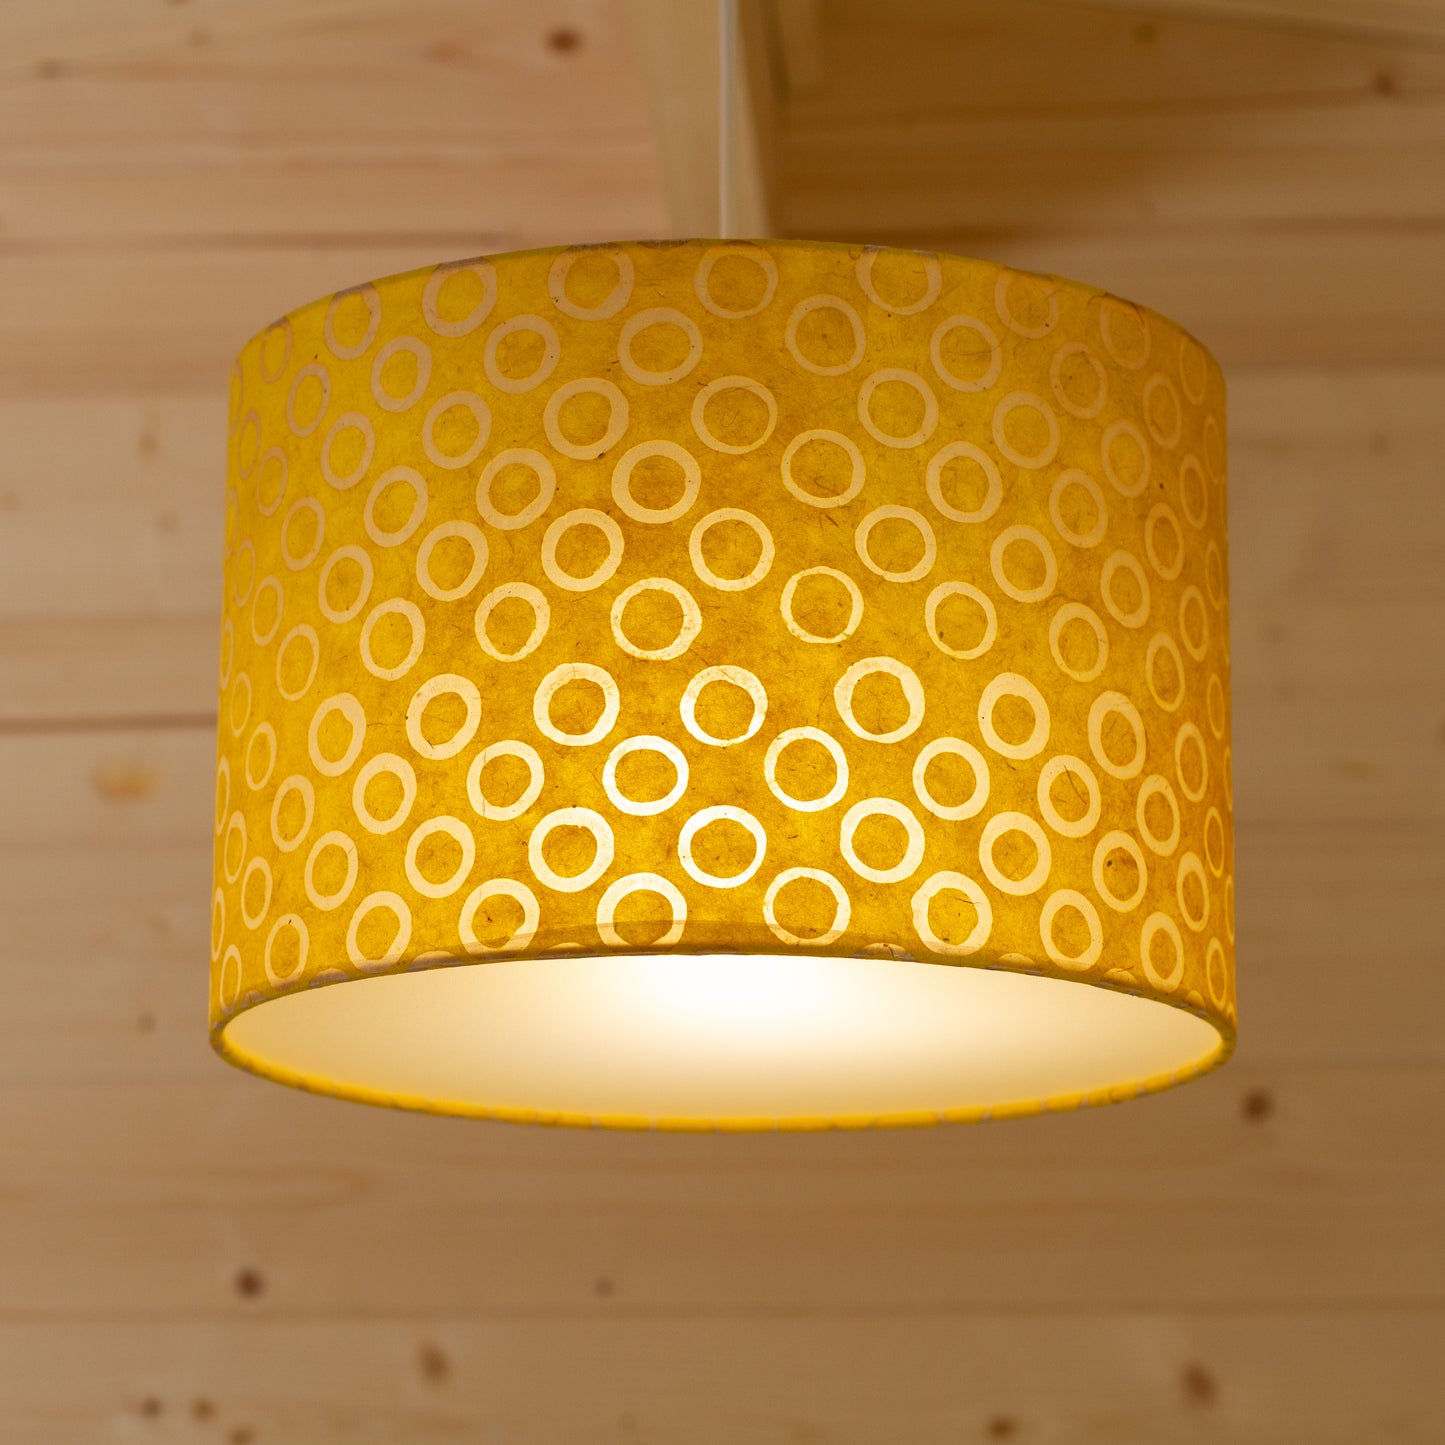 Drum Lamp Shade - P71 - Batik Yellow Circles, 30cm(d) x 20cm(h)